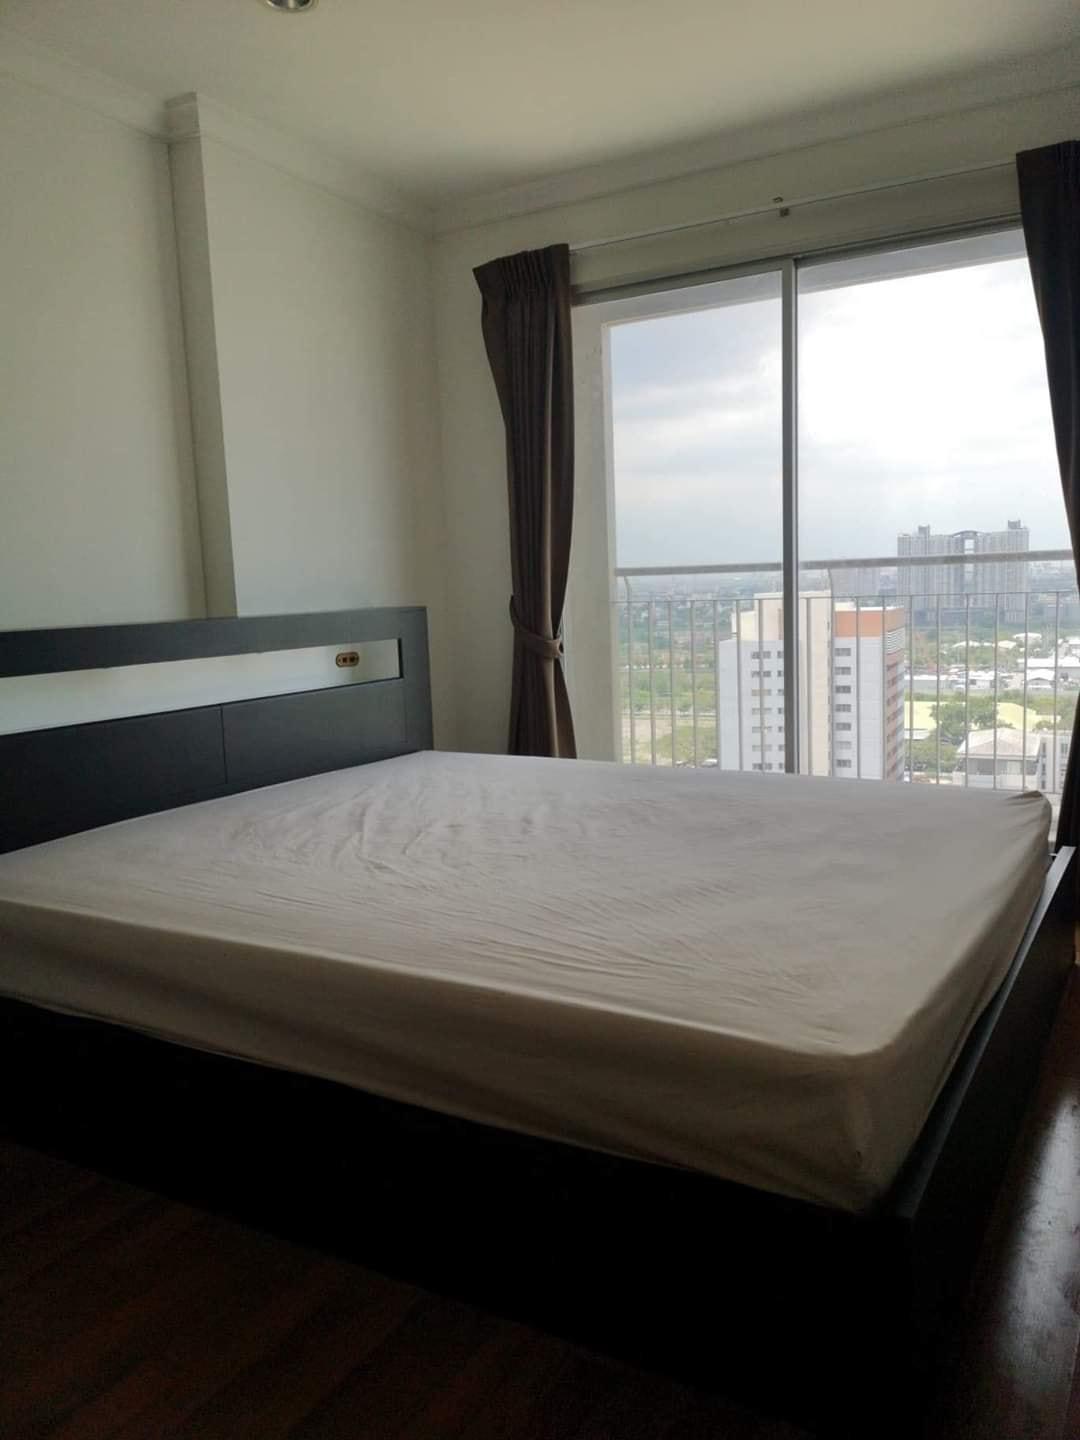 เช่าคอนโด ลุมพินี เพลส พระราม9-รัชดา คอนโดมิเนียม - Condo Rental Lumpini Place Rama IX-Ratchada condominium - 697655